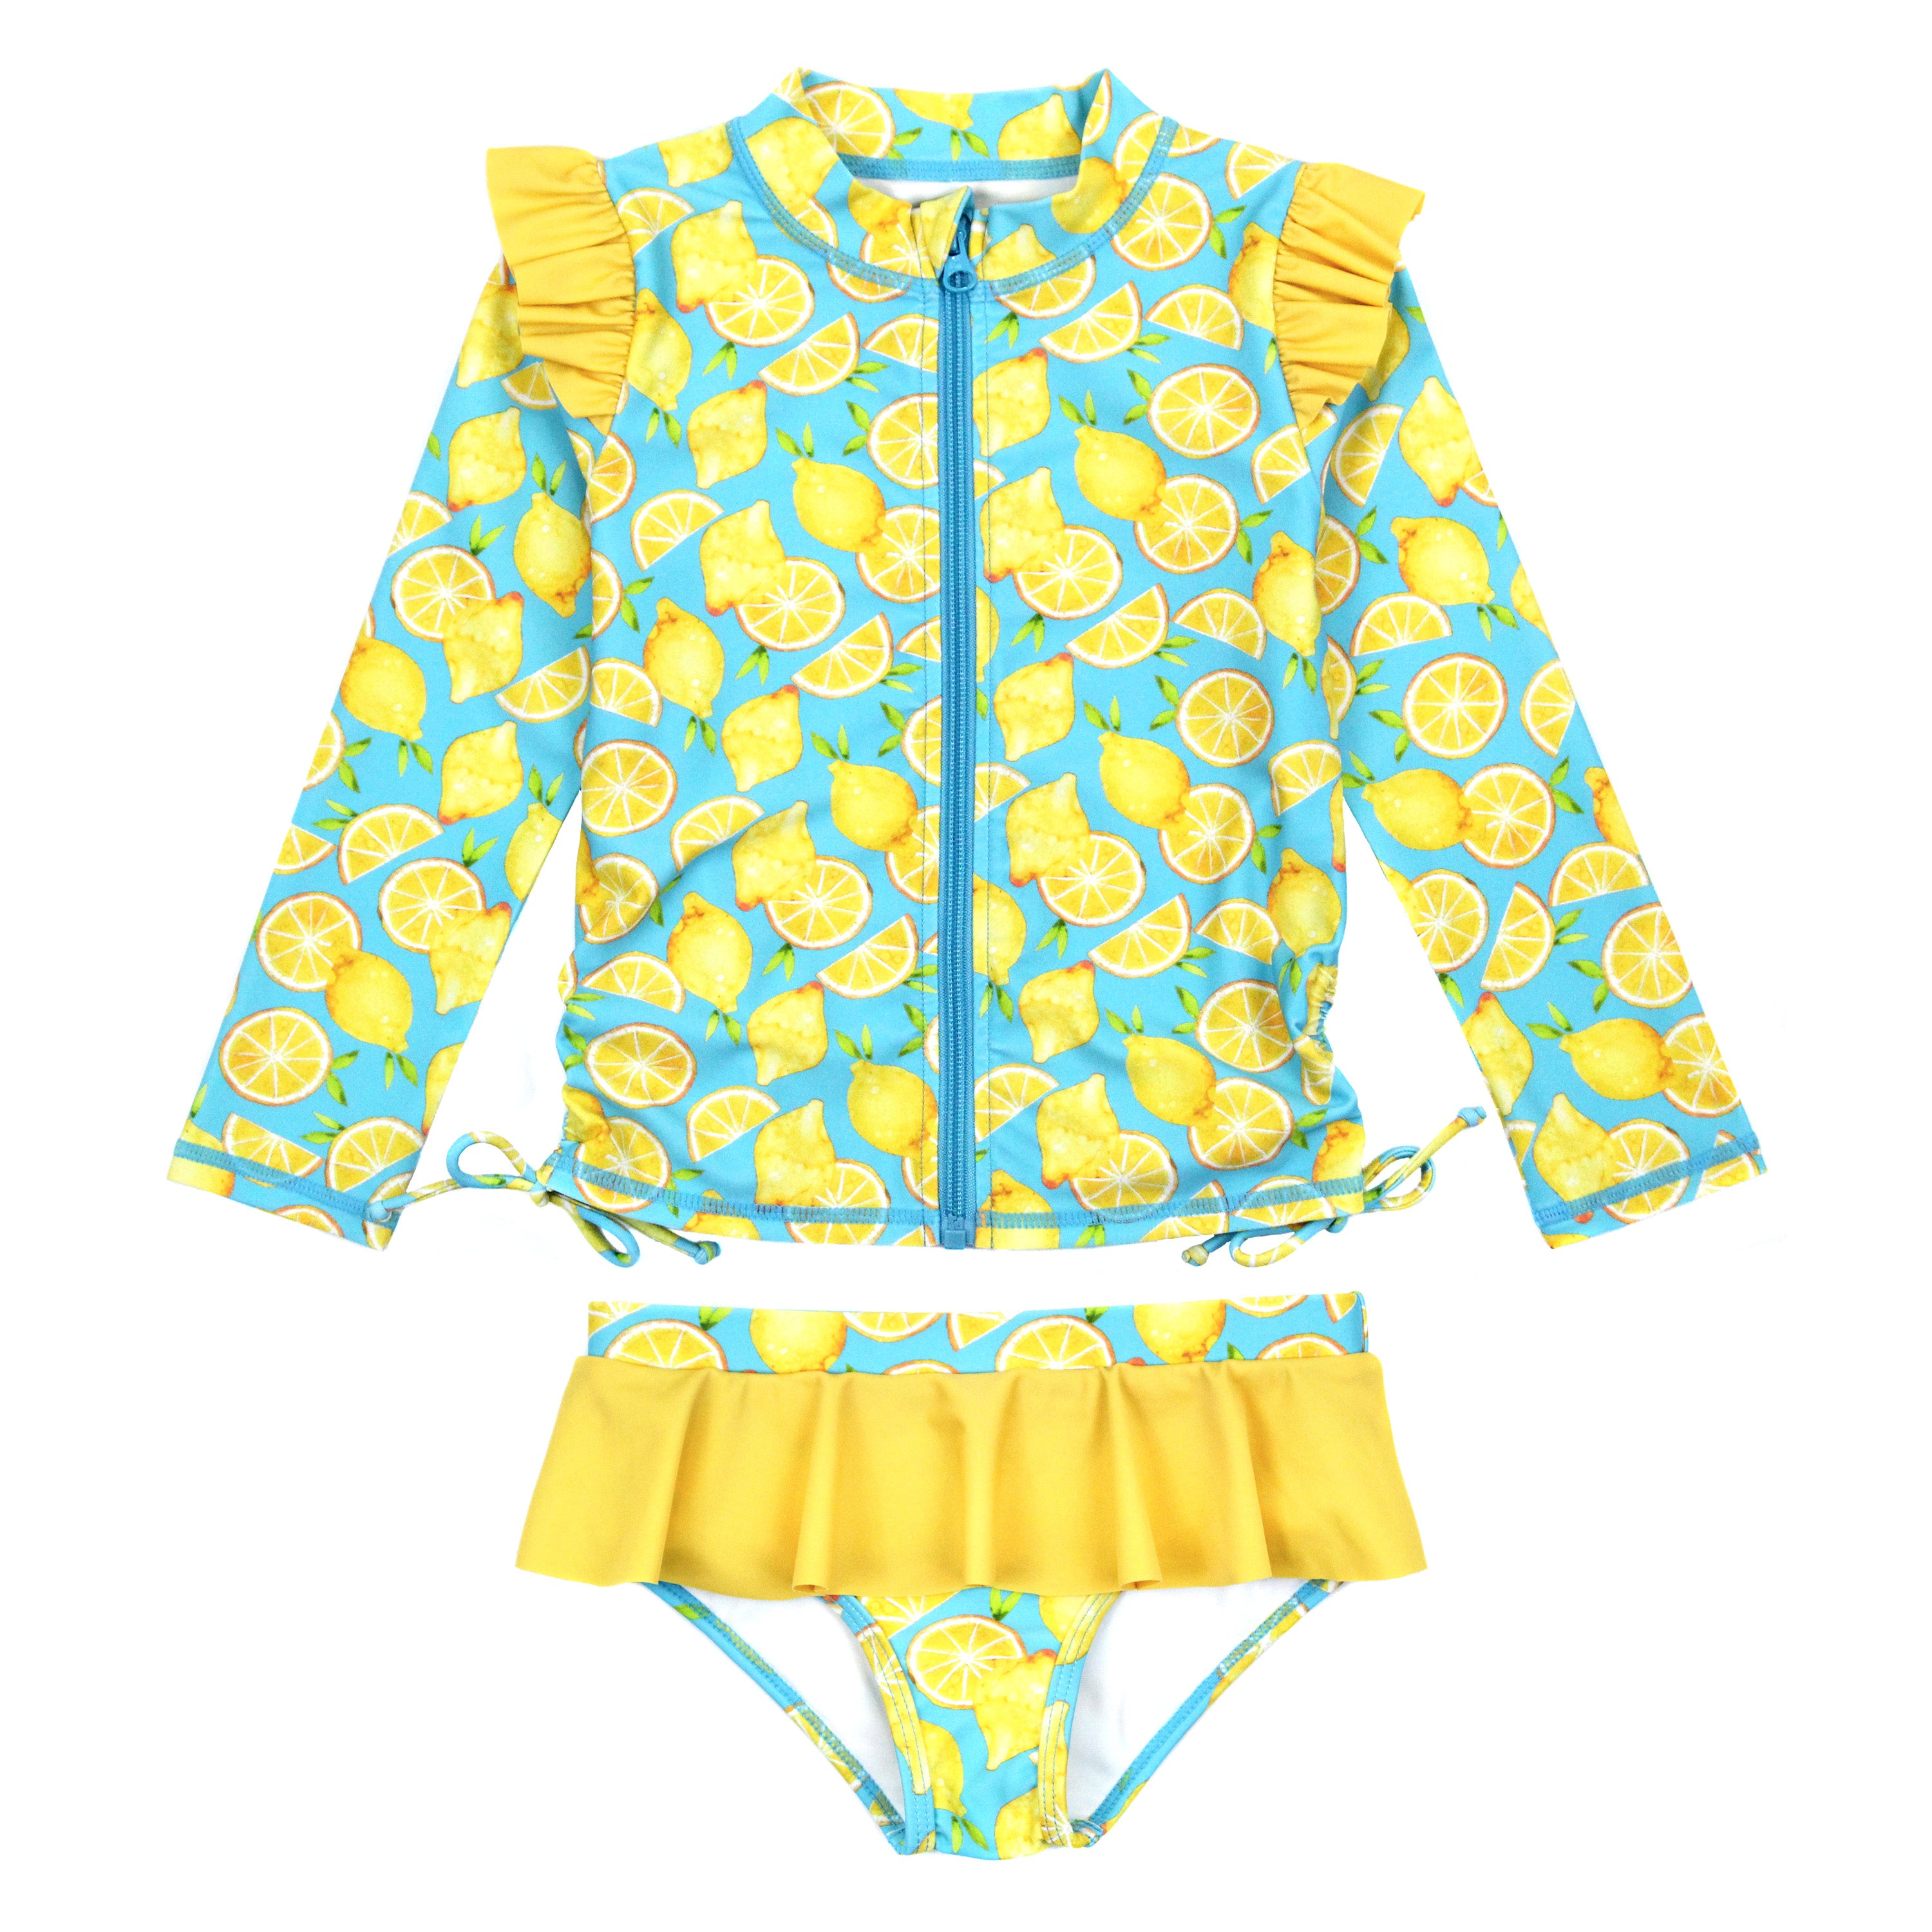  Hopeac Girls Tankini Ruffle Swimwear Two Piece